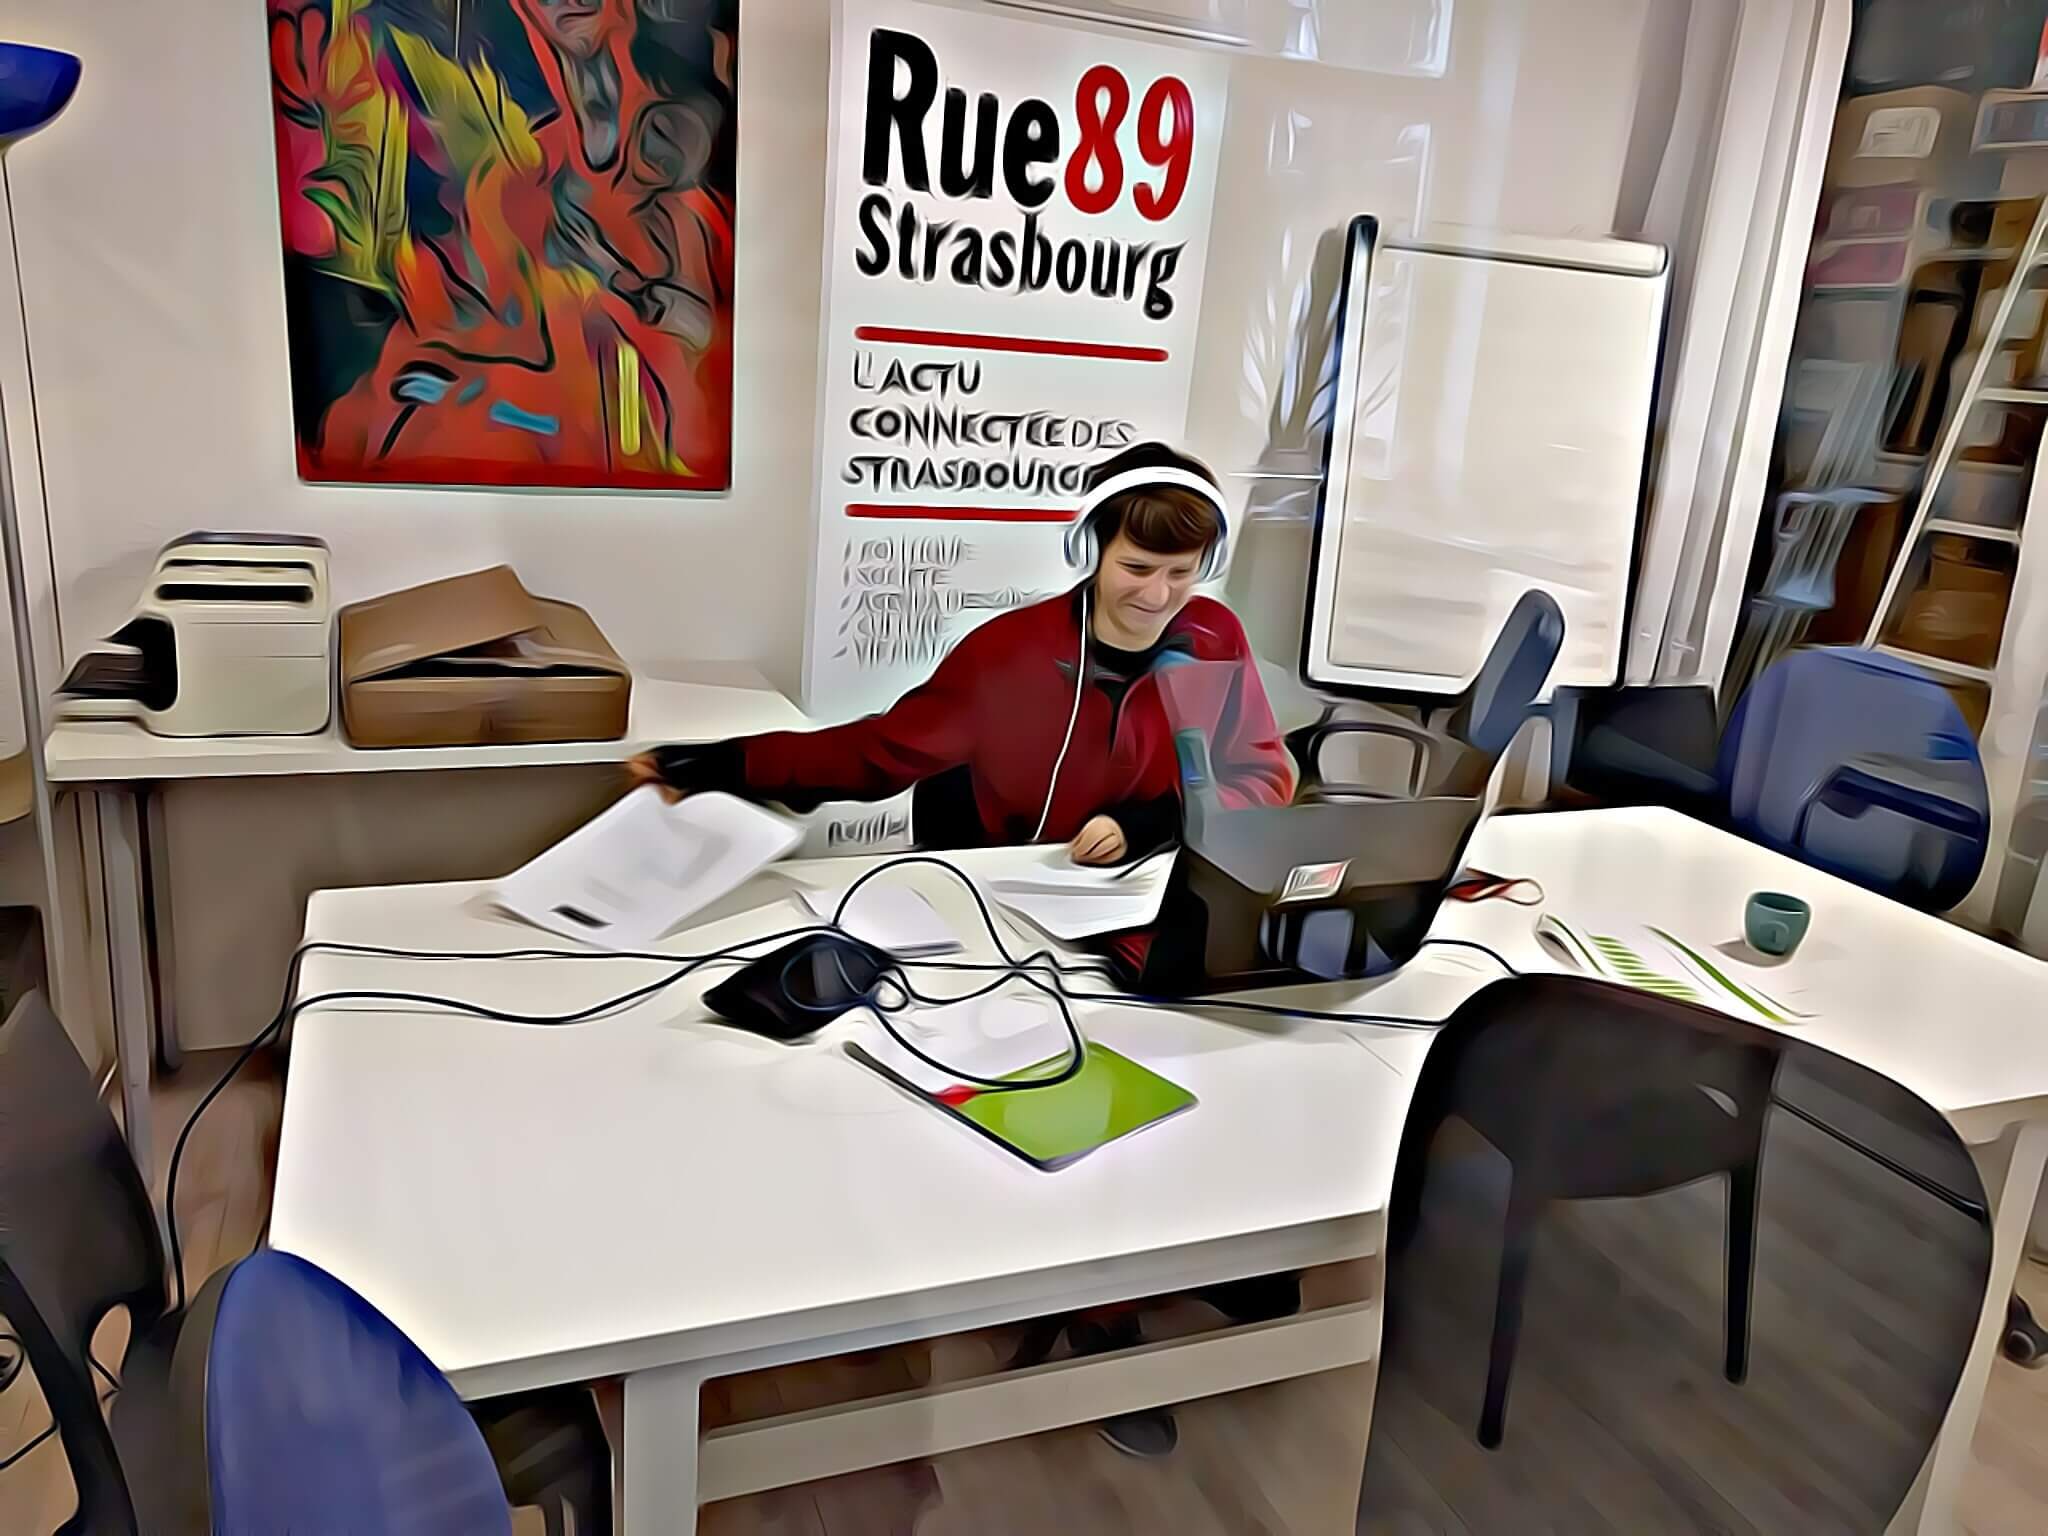 Rue89 Strasbourg bénéficiaire en 2020, grâce au soutien des abonnés